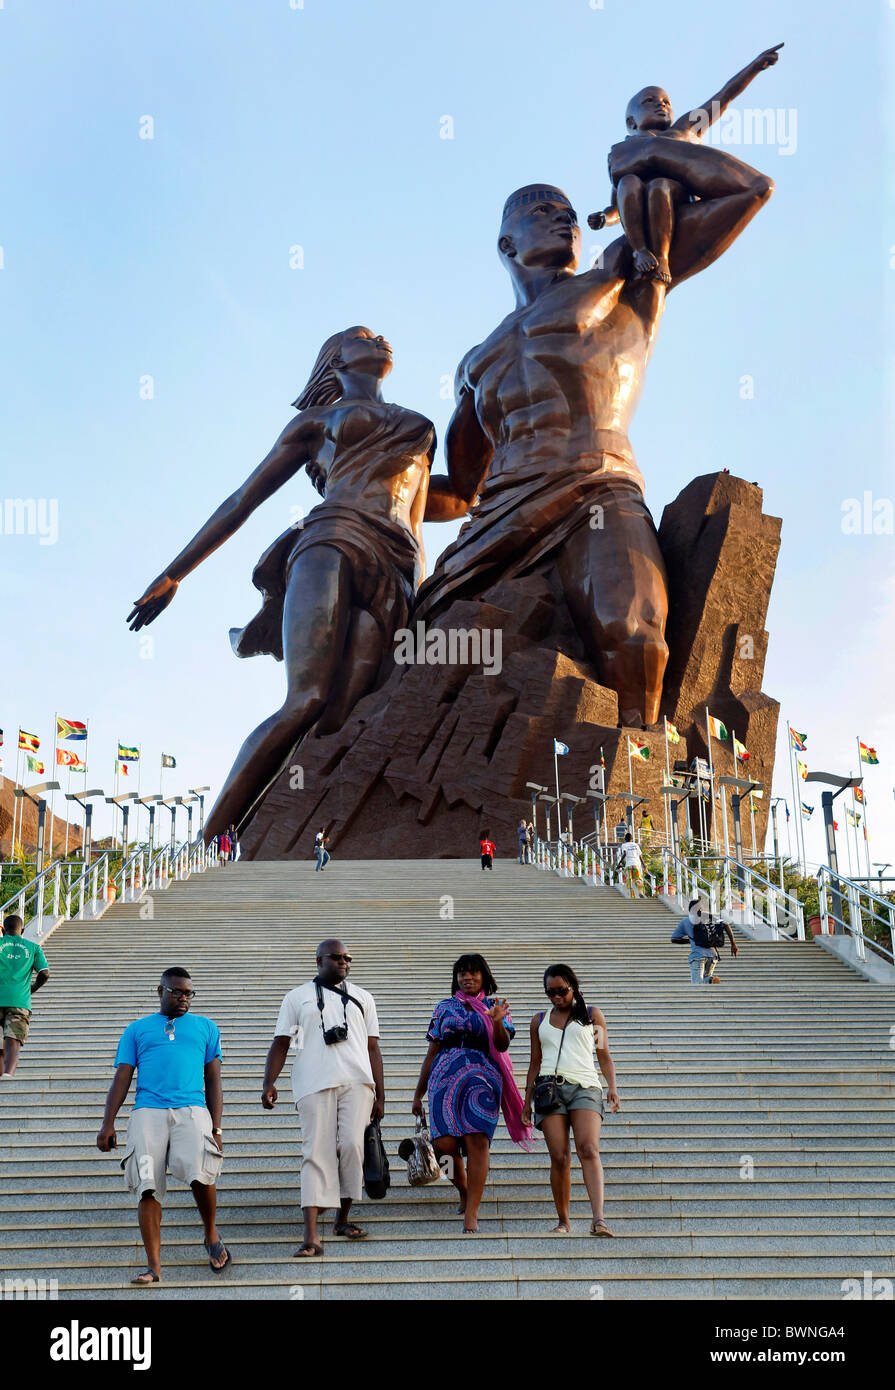 Le Monument de la Renaissance africaine à Dakar, Sénégal Banque D'Images